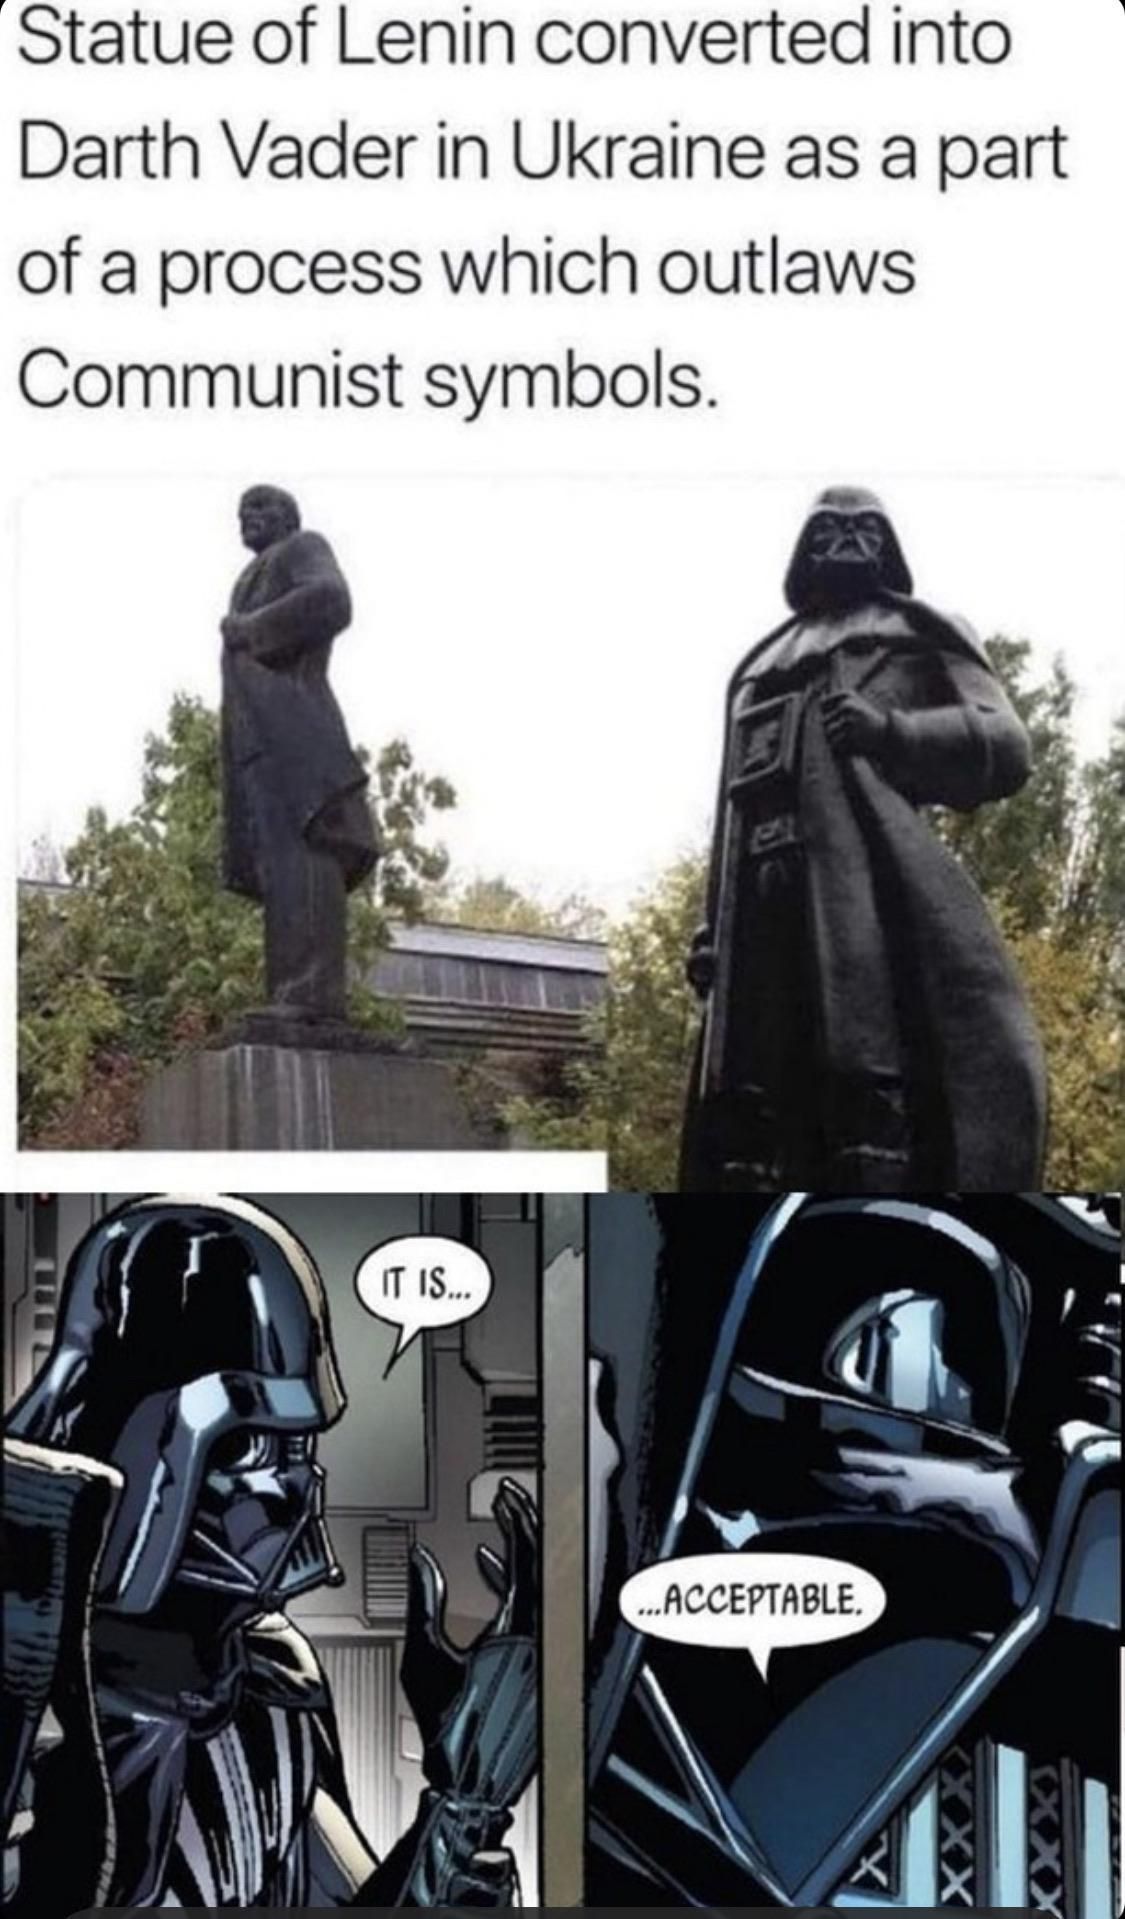 The Empire will appreciate